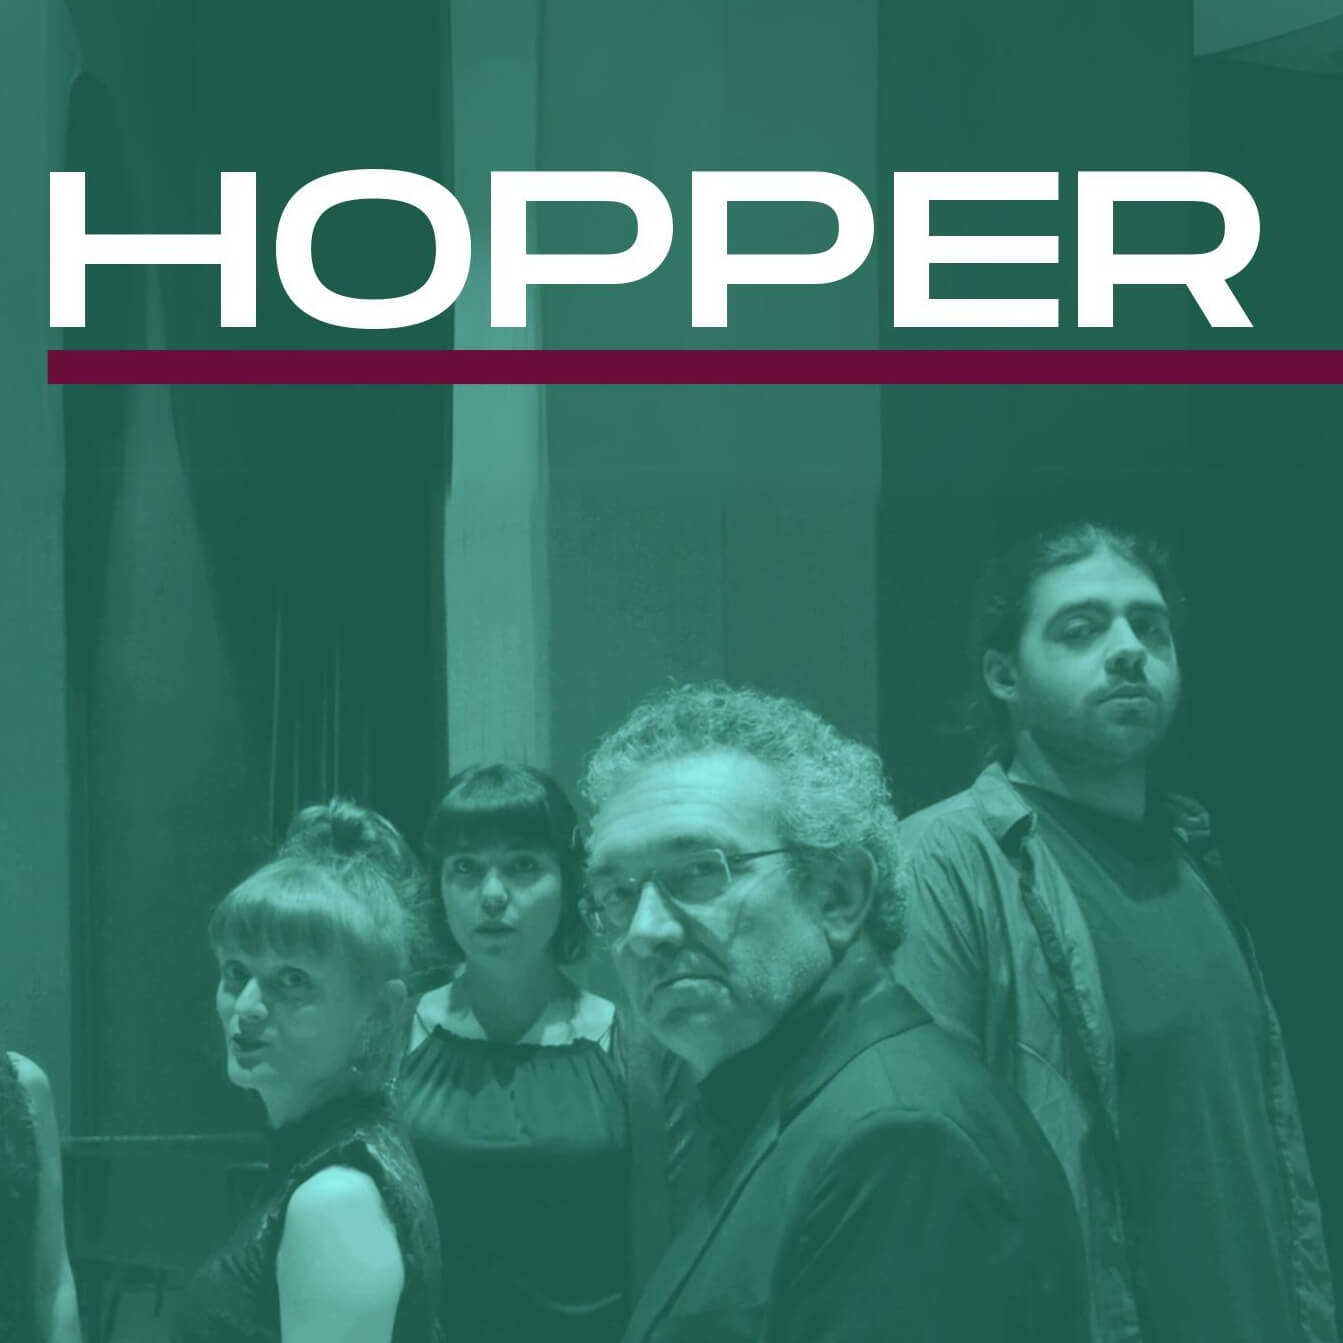 Visuel avec l'ensemble Hopper